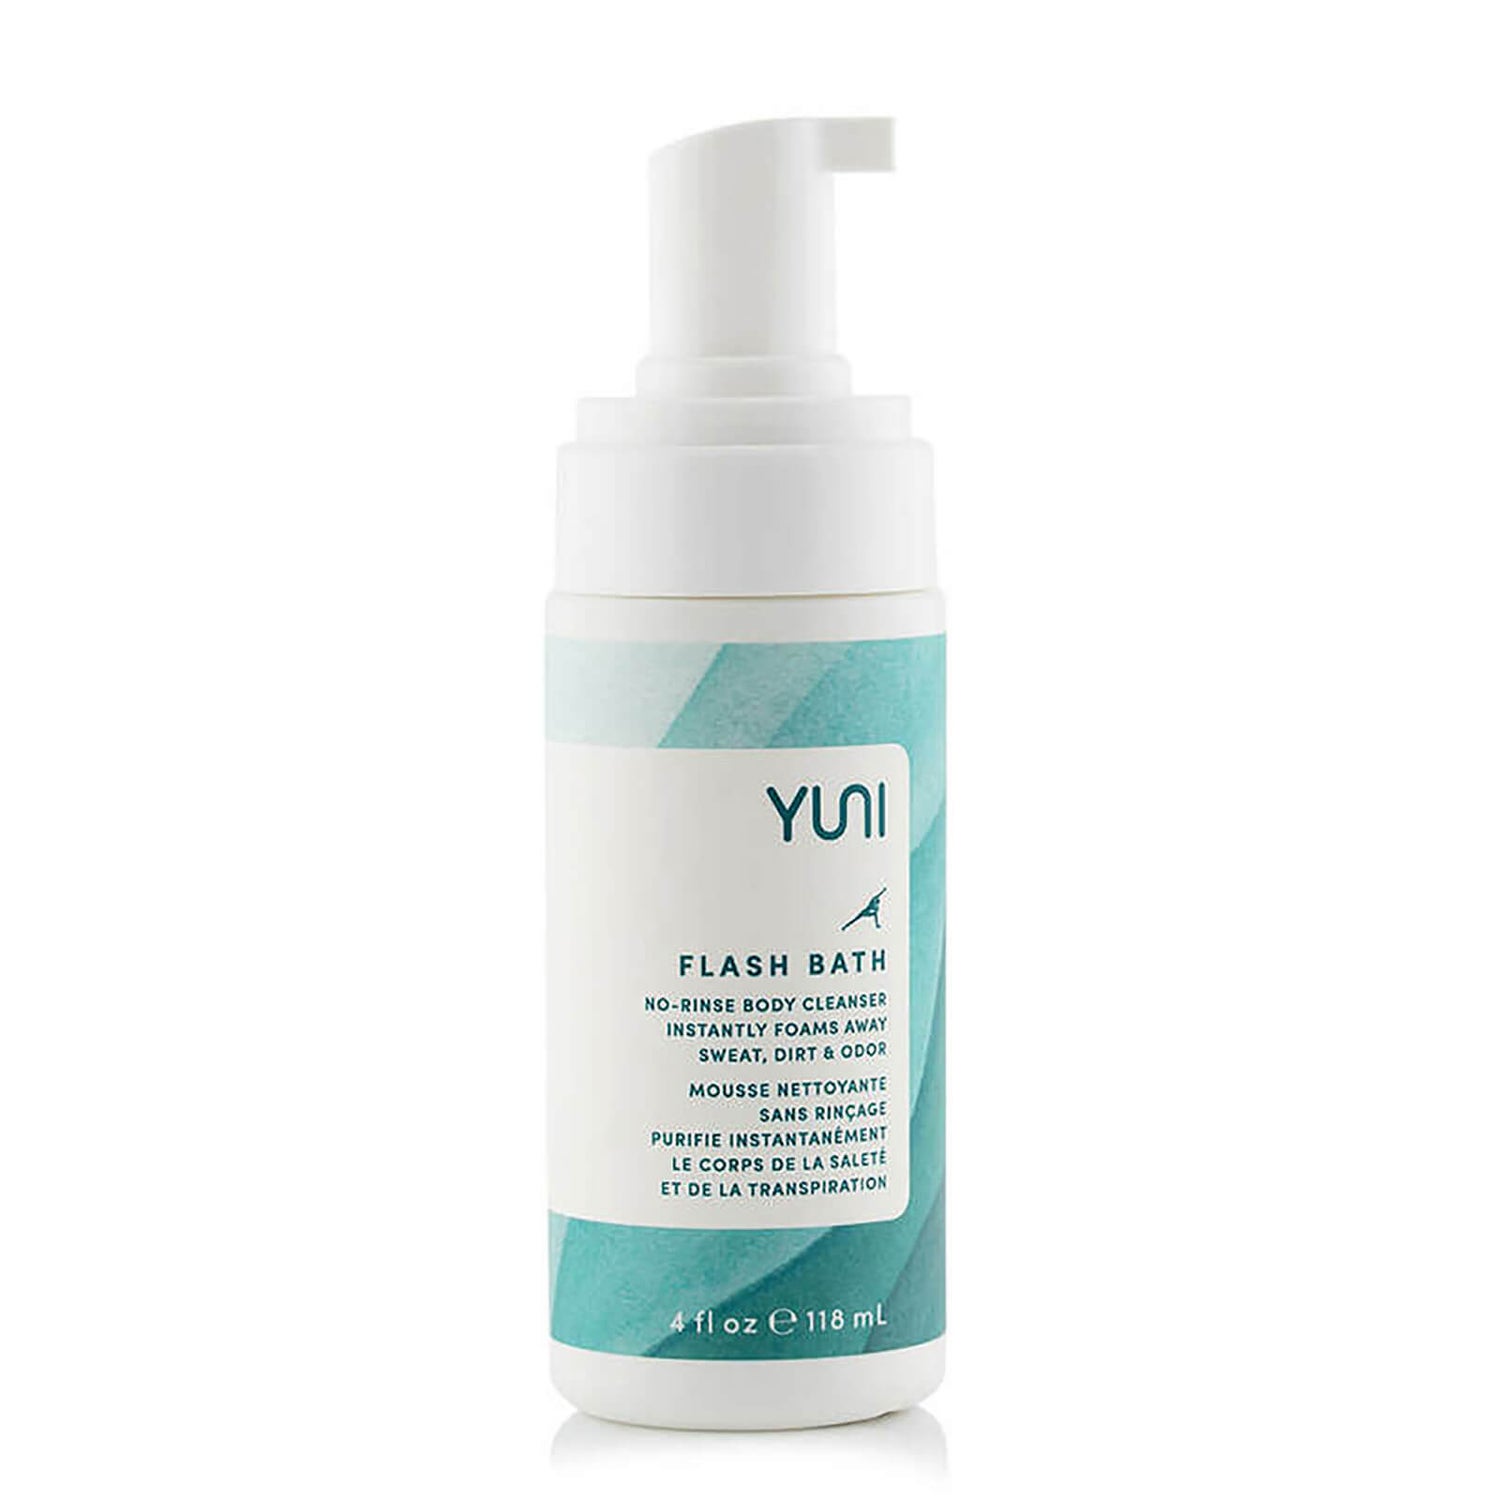 YUNI Beauty Flash Bath No-Rinse Body Cleanser